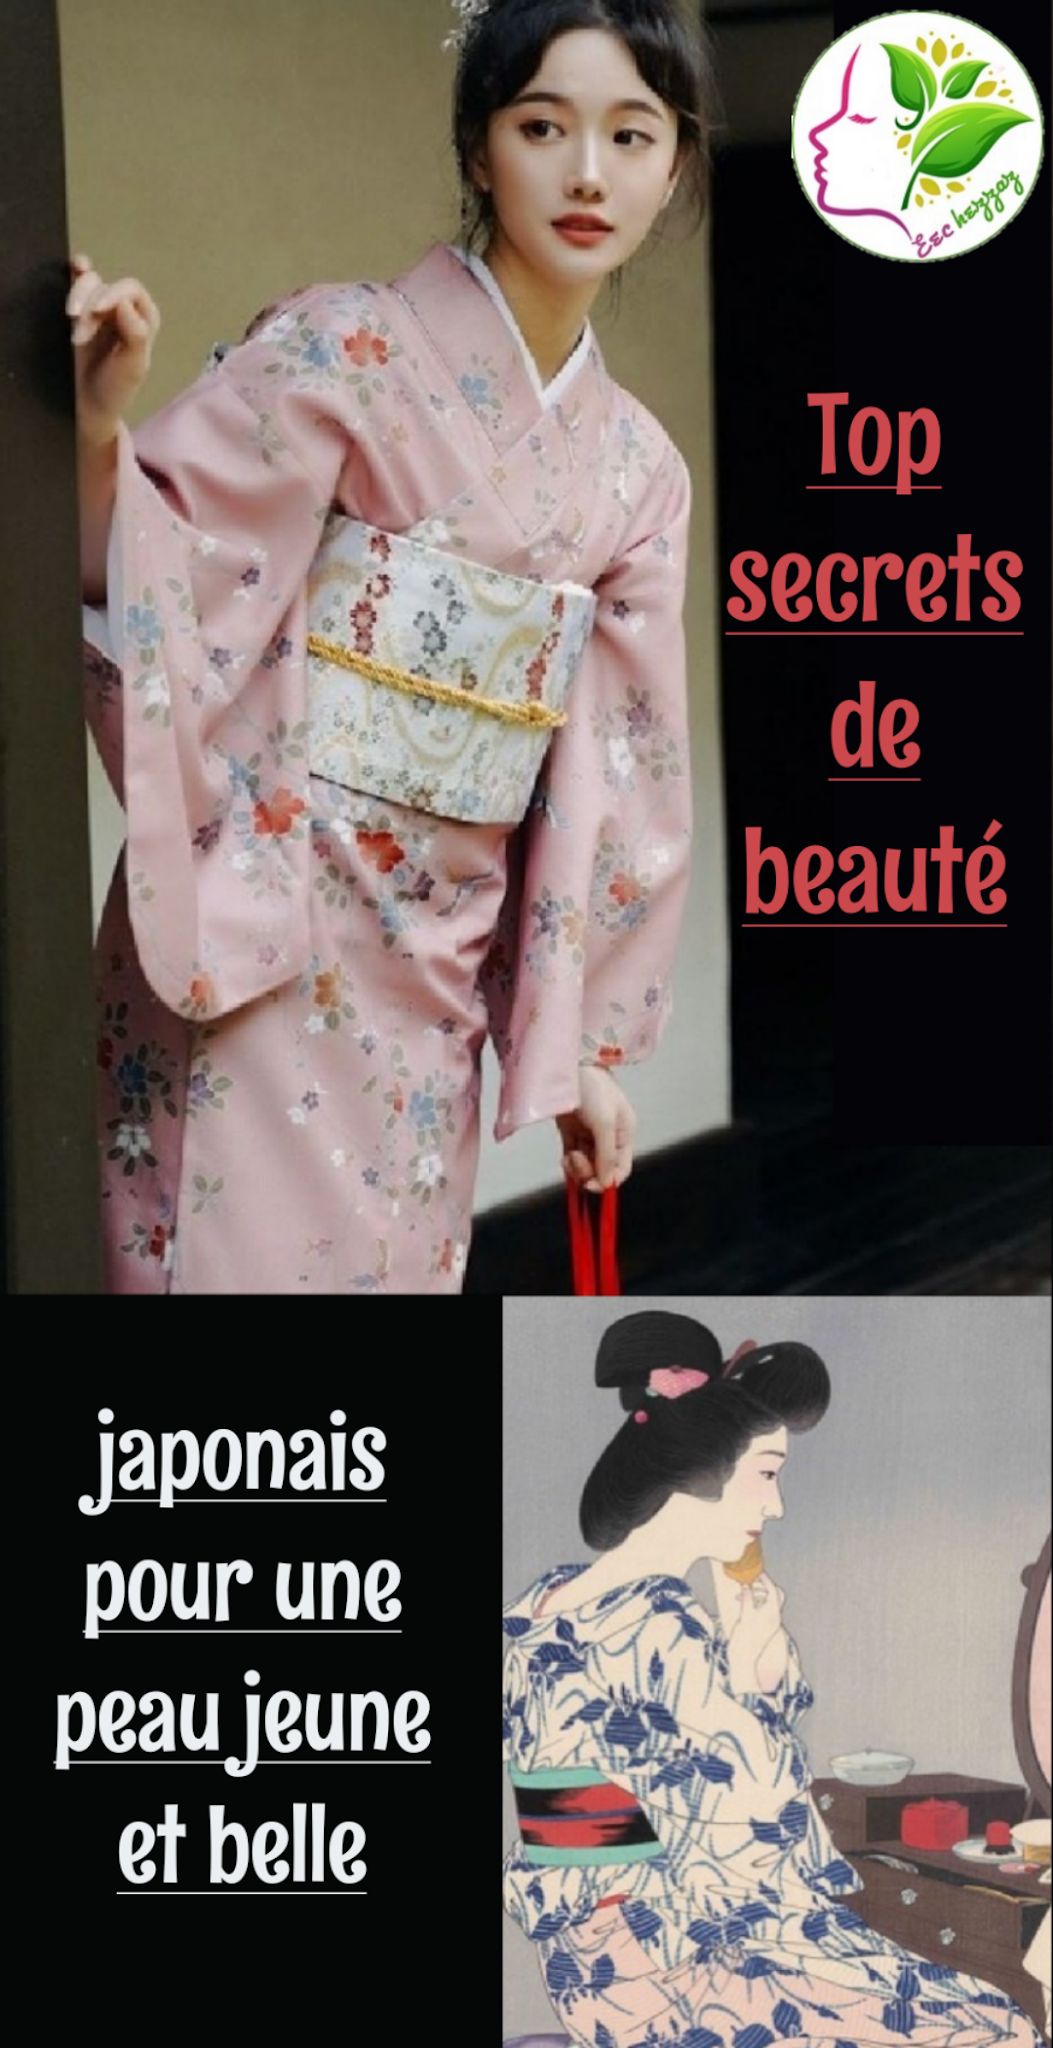 Top secrets de beauté japonais pour une peau jeune et belle